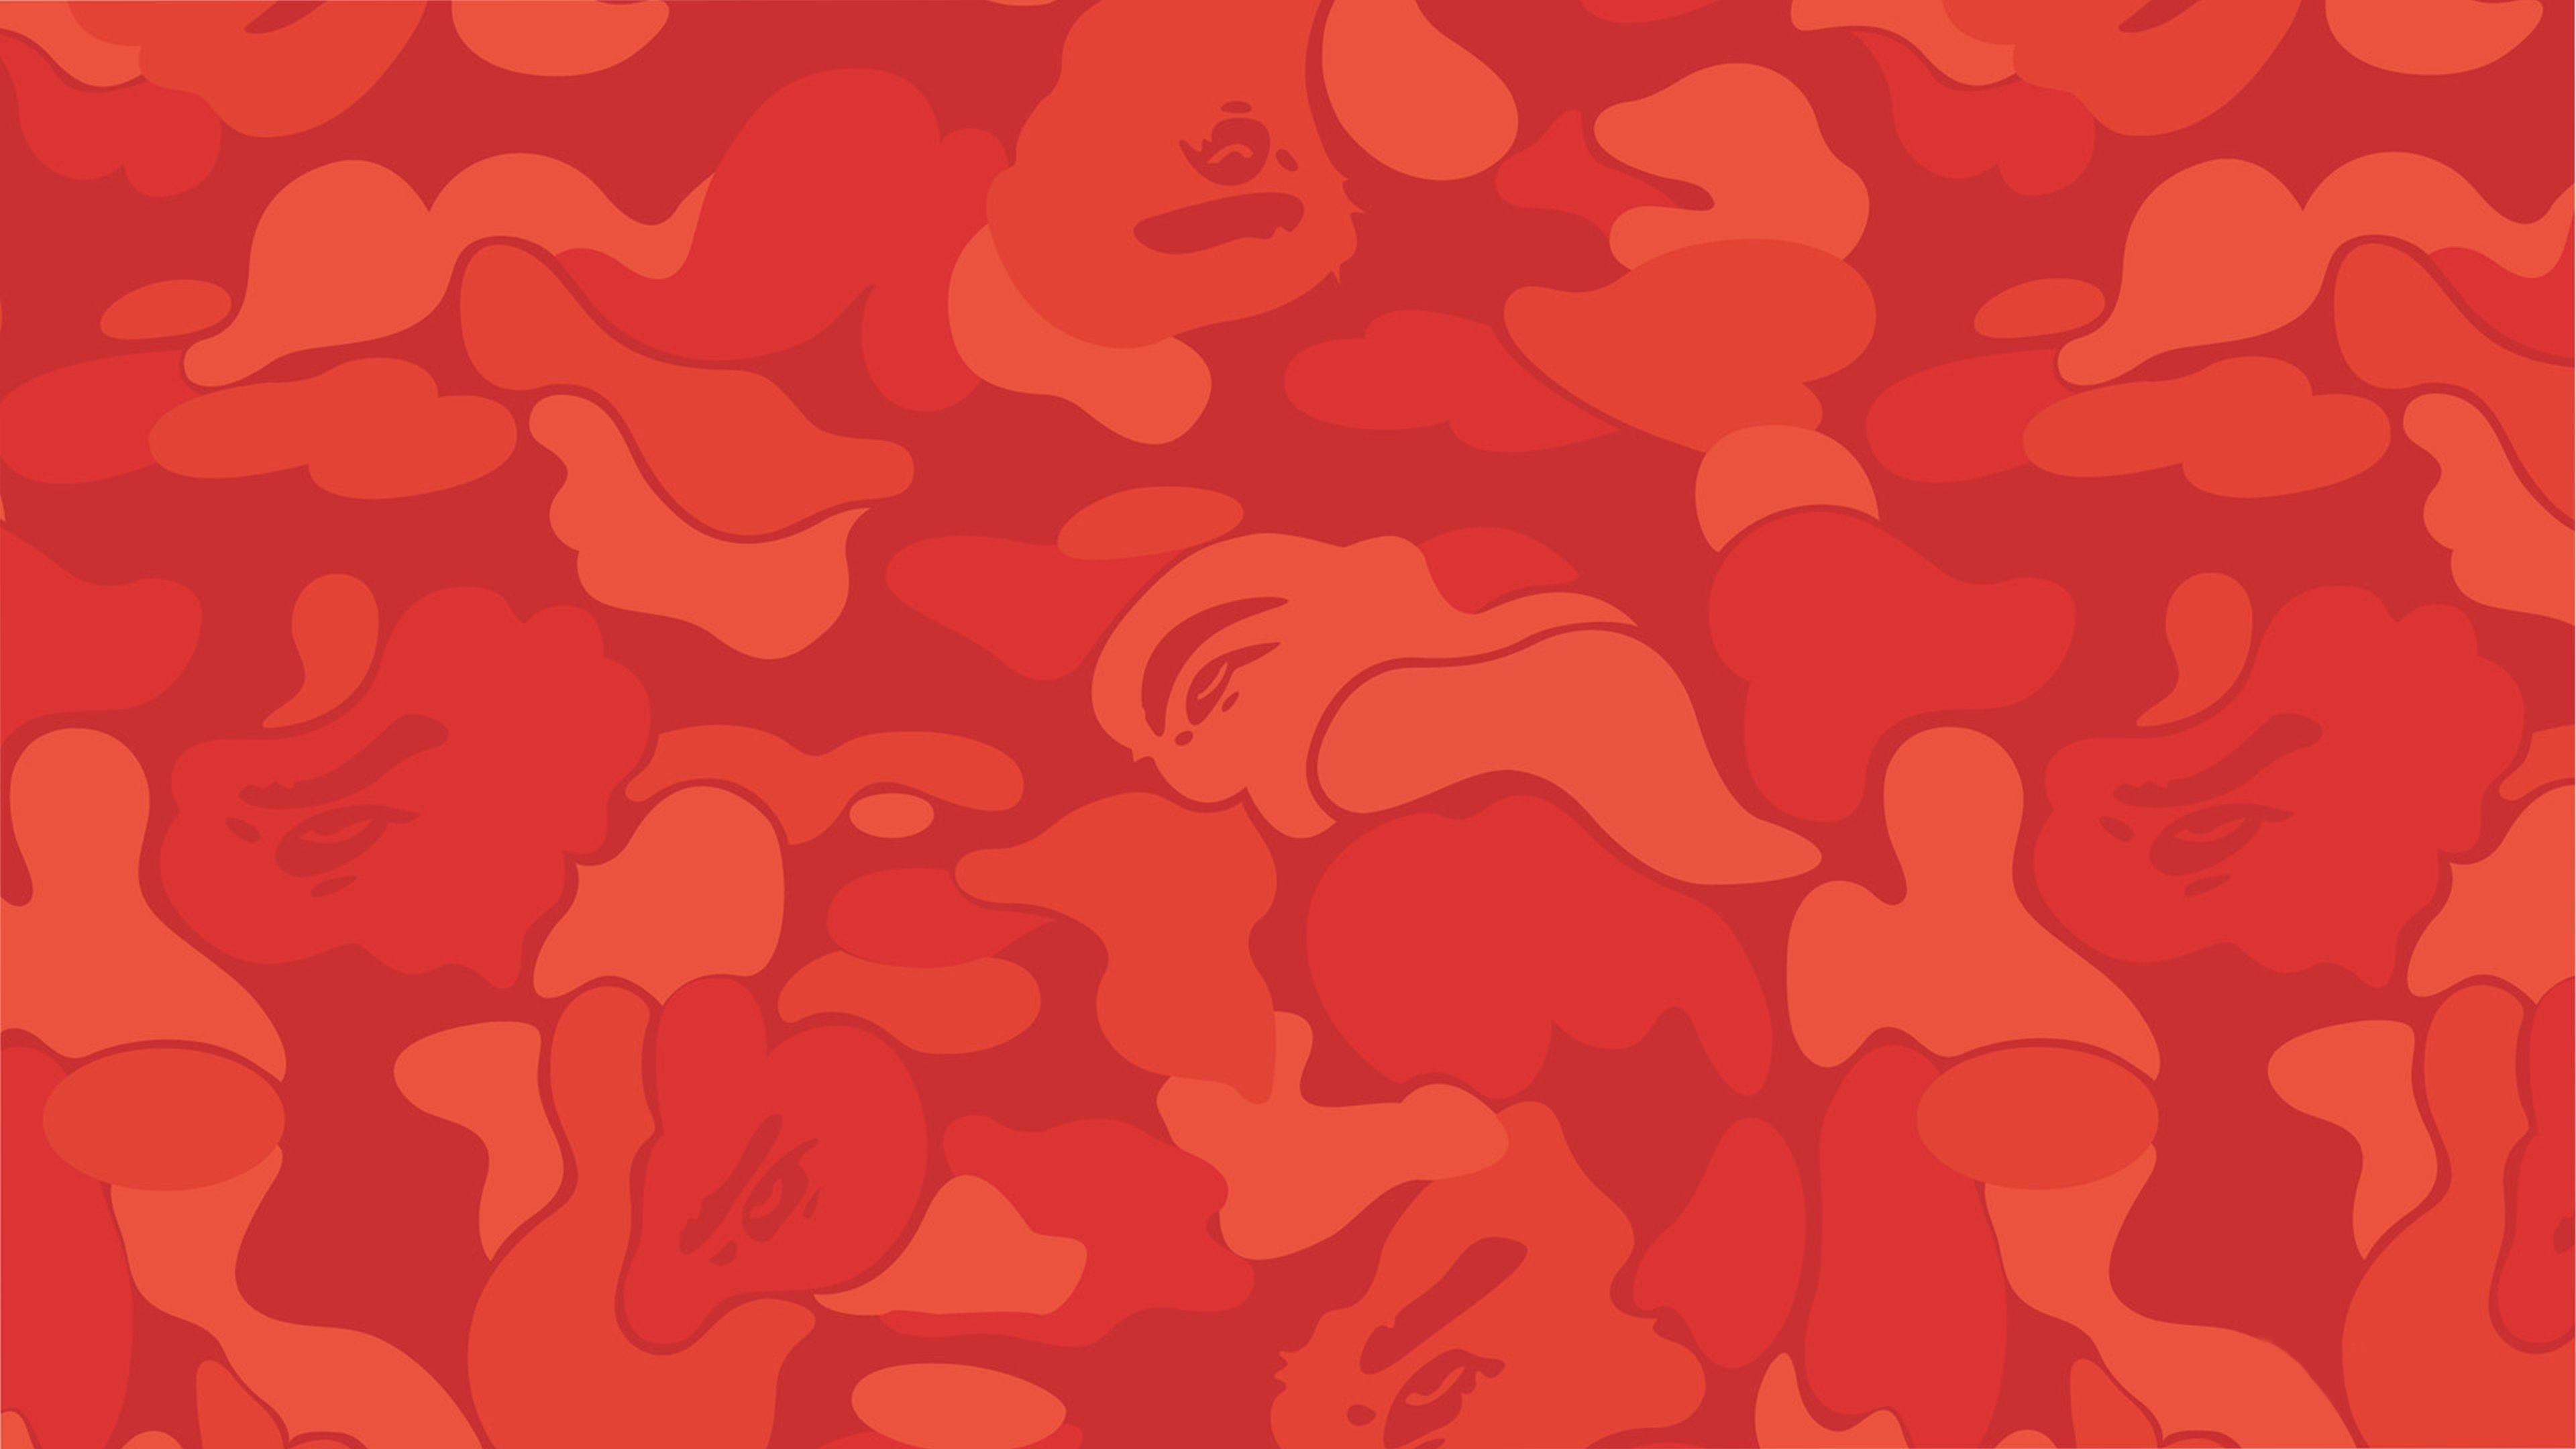 Red BAPE Camo Wallpaper Free Red BAPE Camo Background